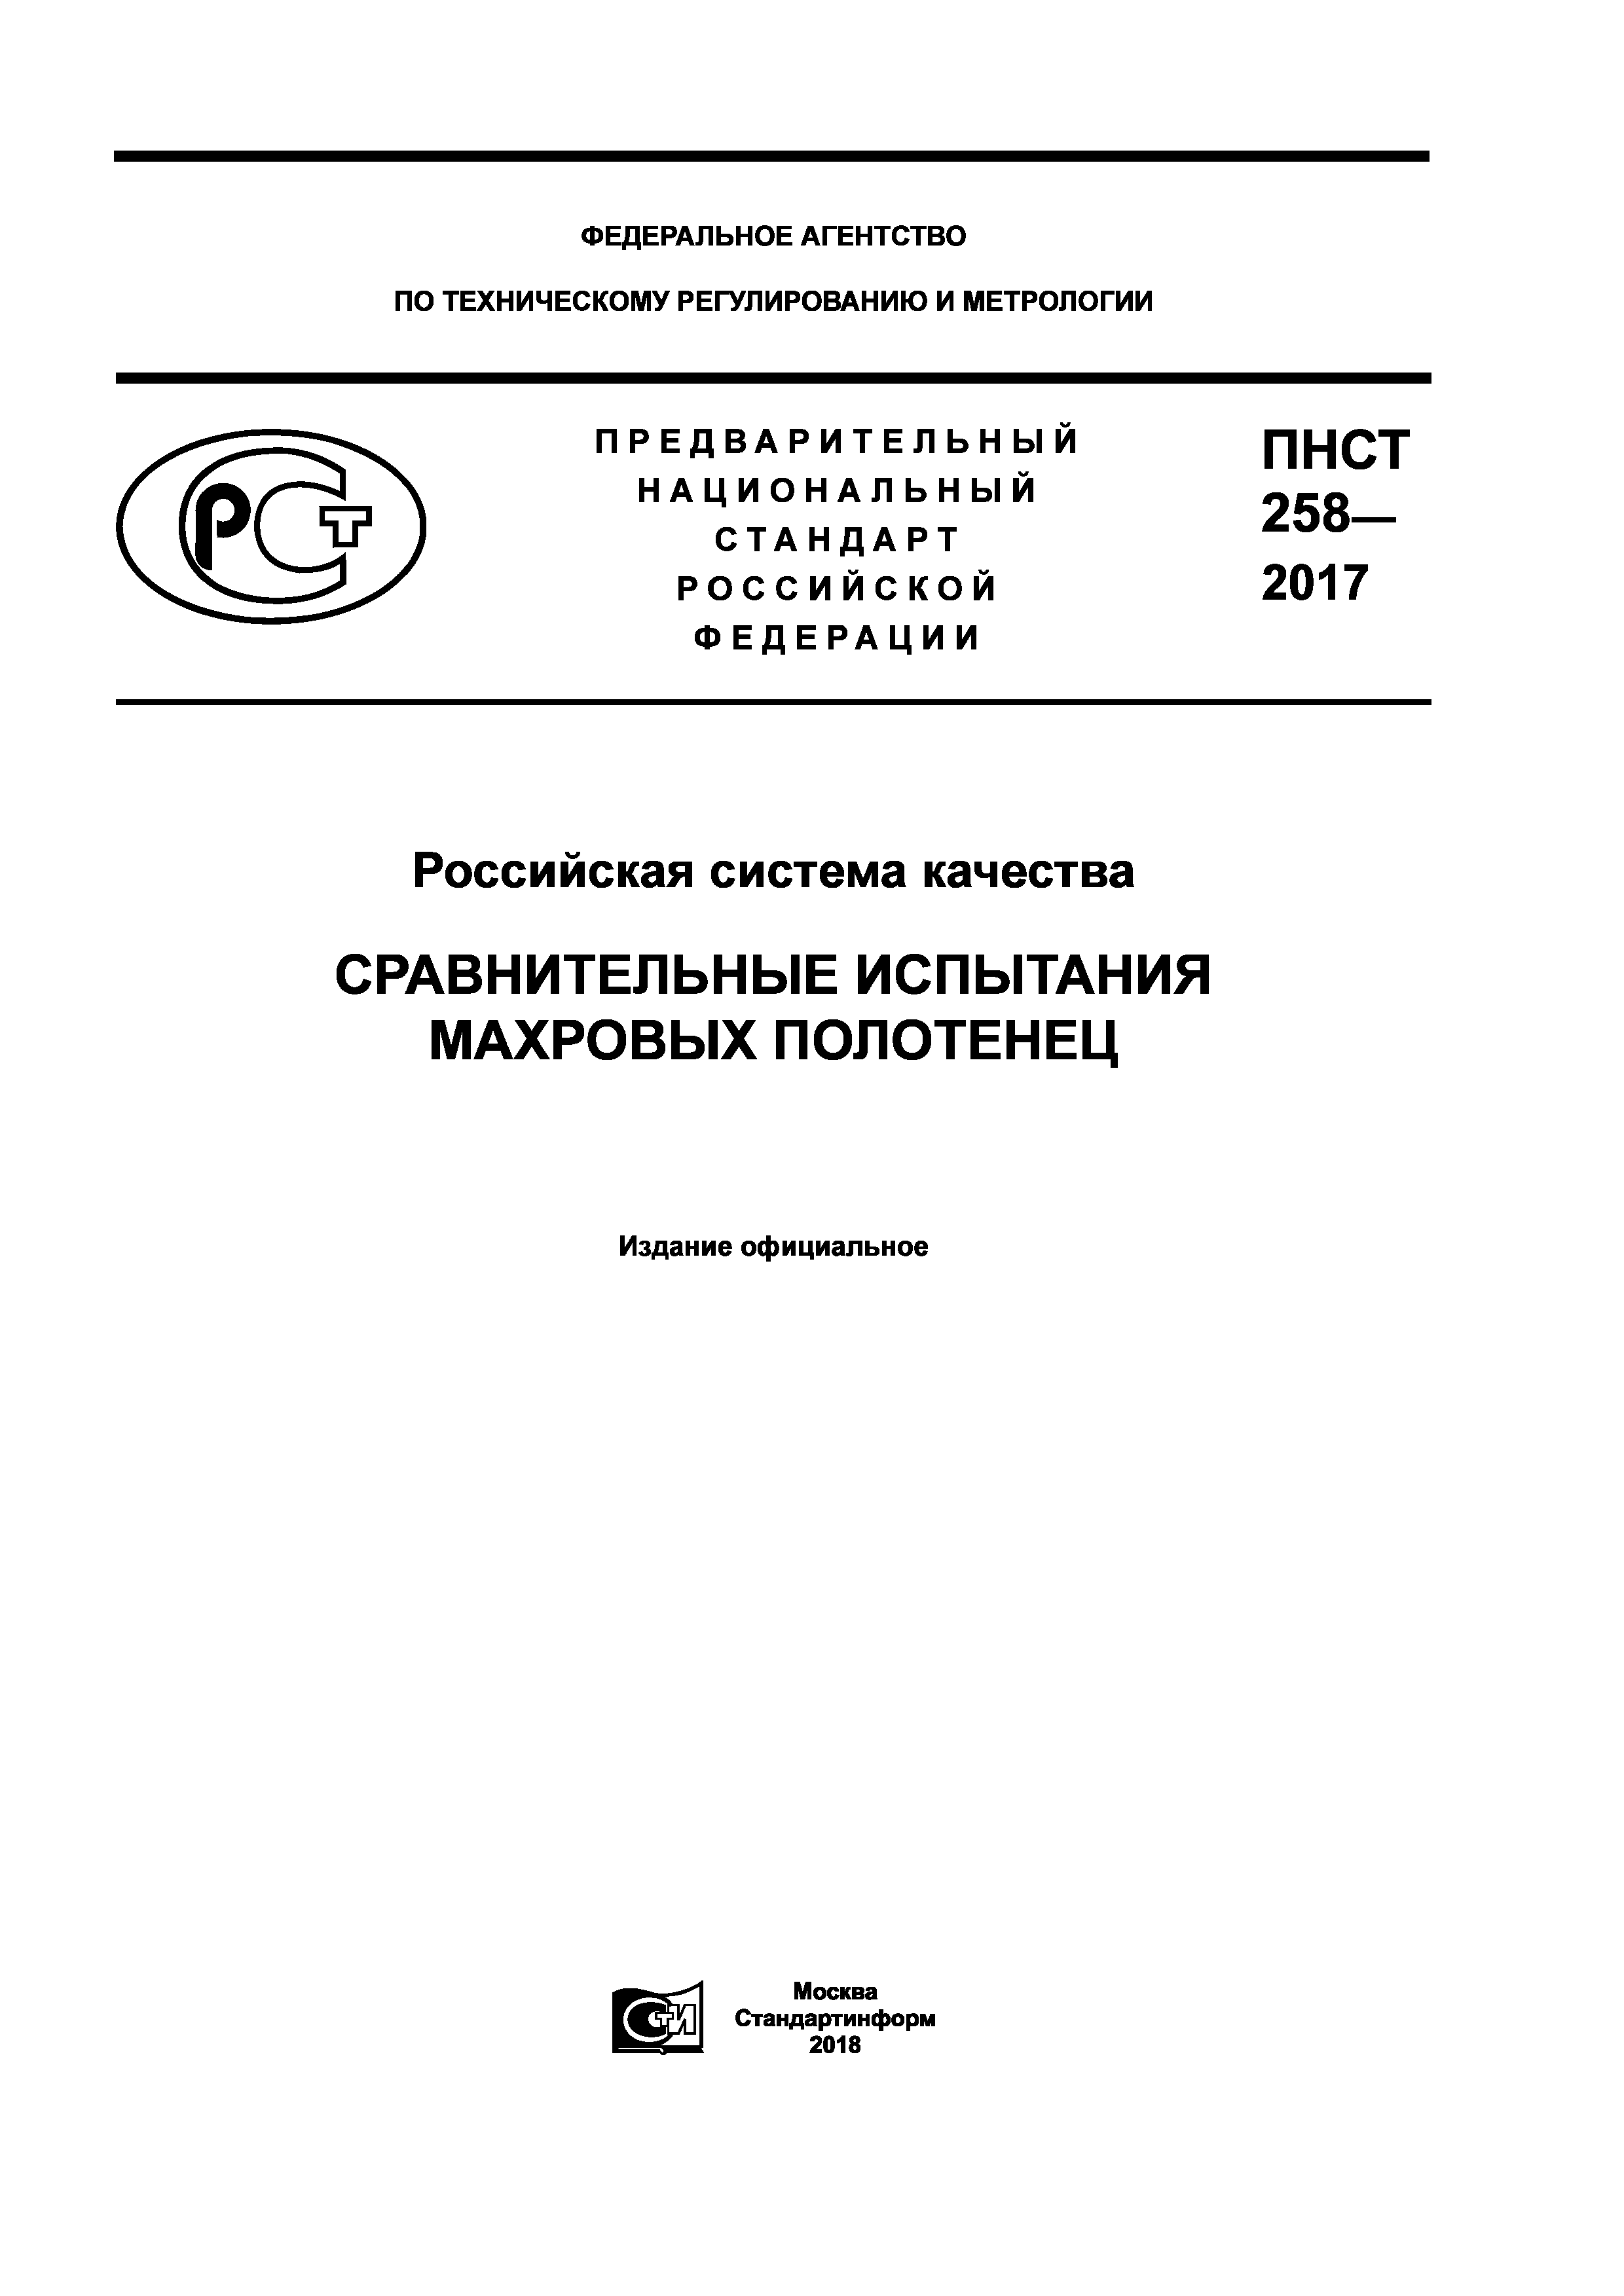 ПНСТ 258-2017